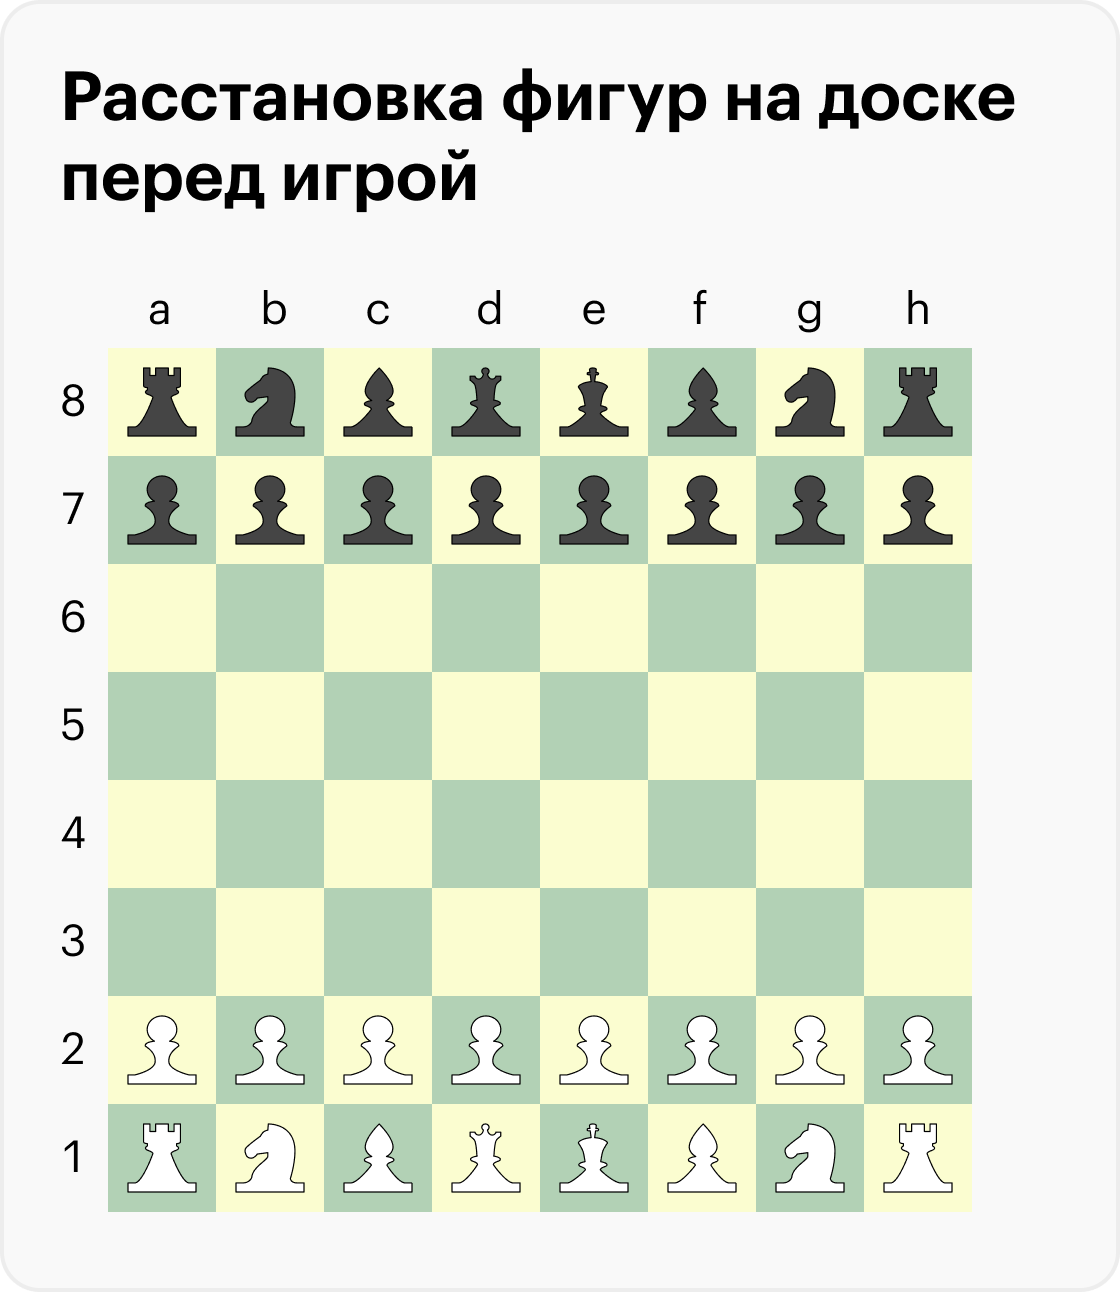 Правила игры в шахматы для начинающих: пошаговая инструкция, как ходят фигуры, расстановка на доске